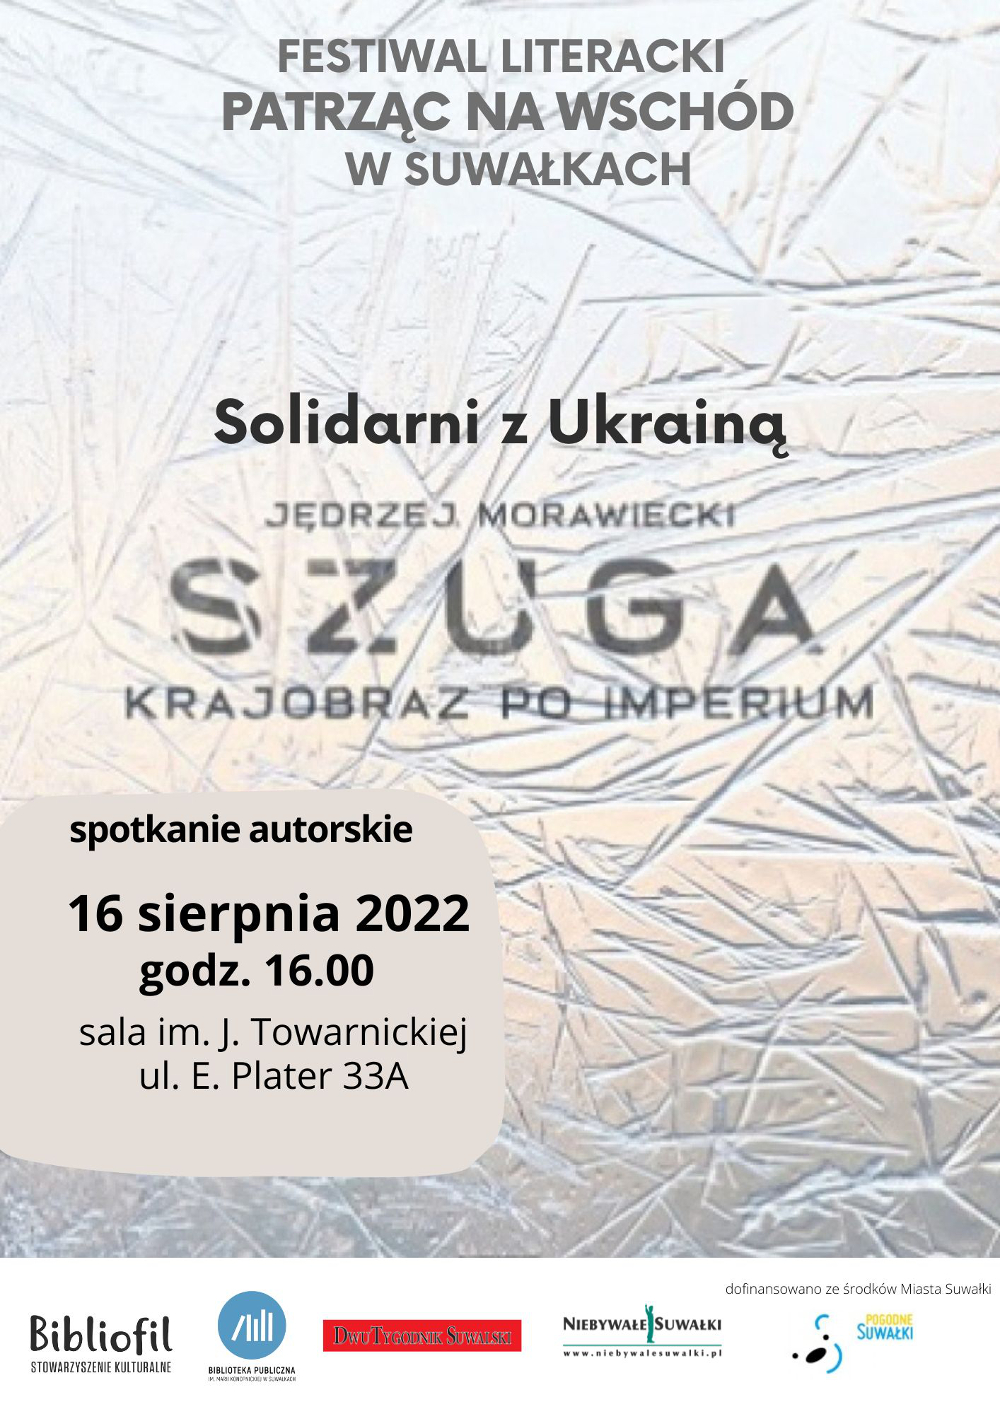 Solidarni z Ukrainą Jędrzej Morawiecki Szuga 16.08.2022